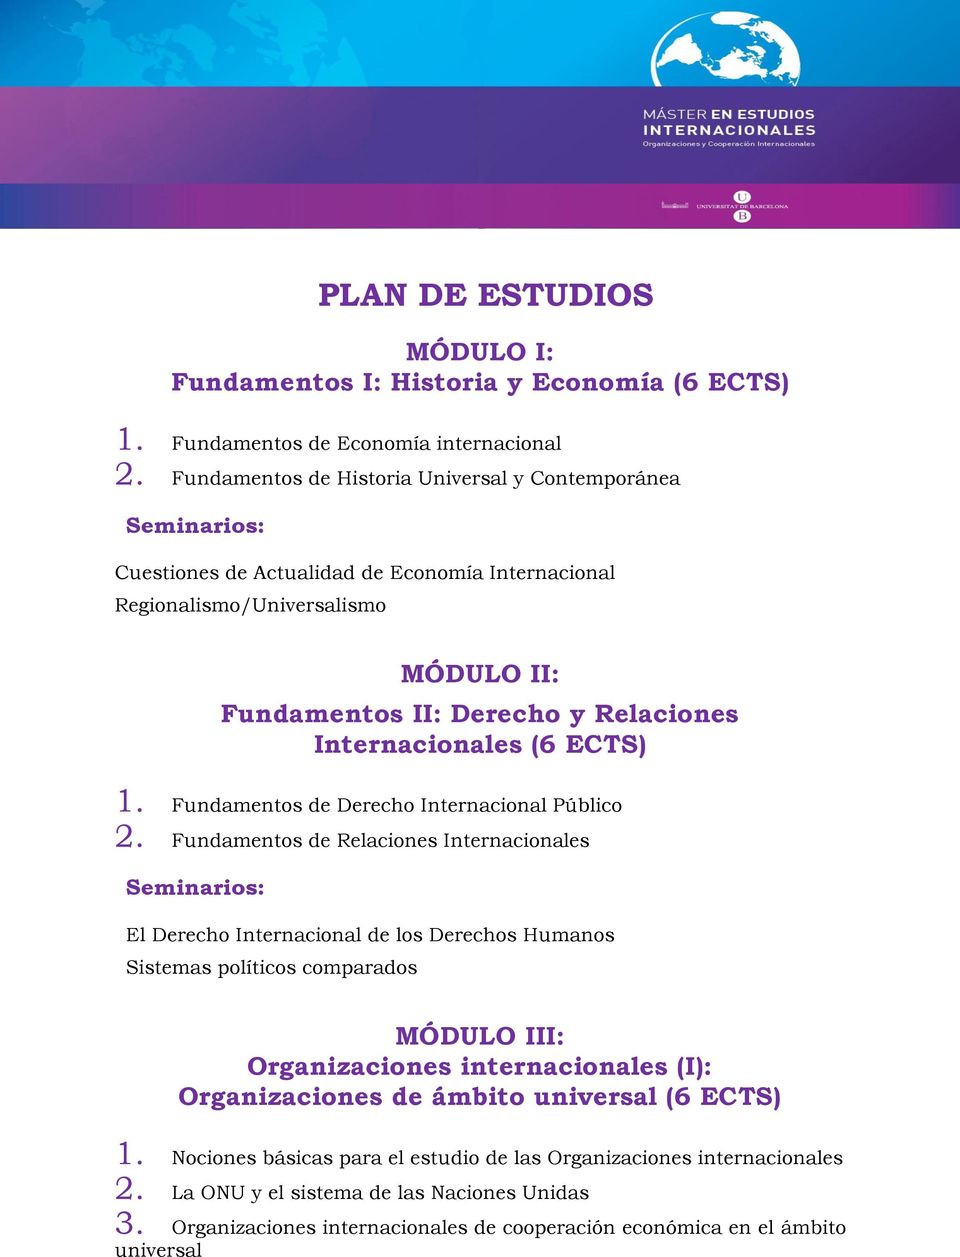 ECTS) 1. Fundamentos de Derecho Internacional Público 2.